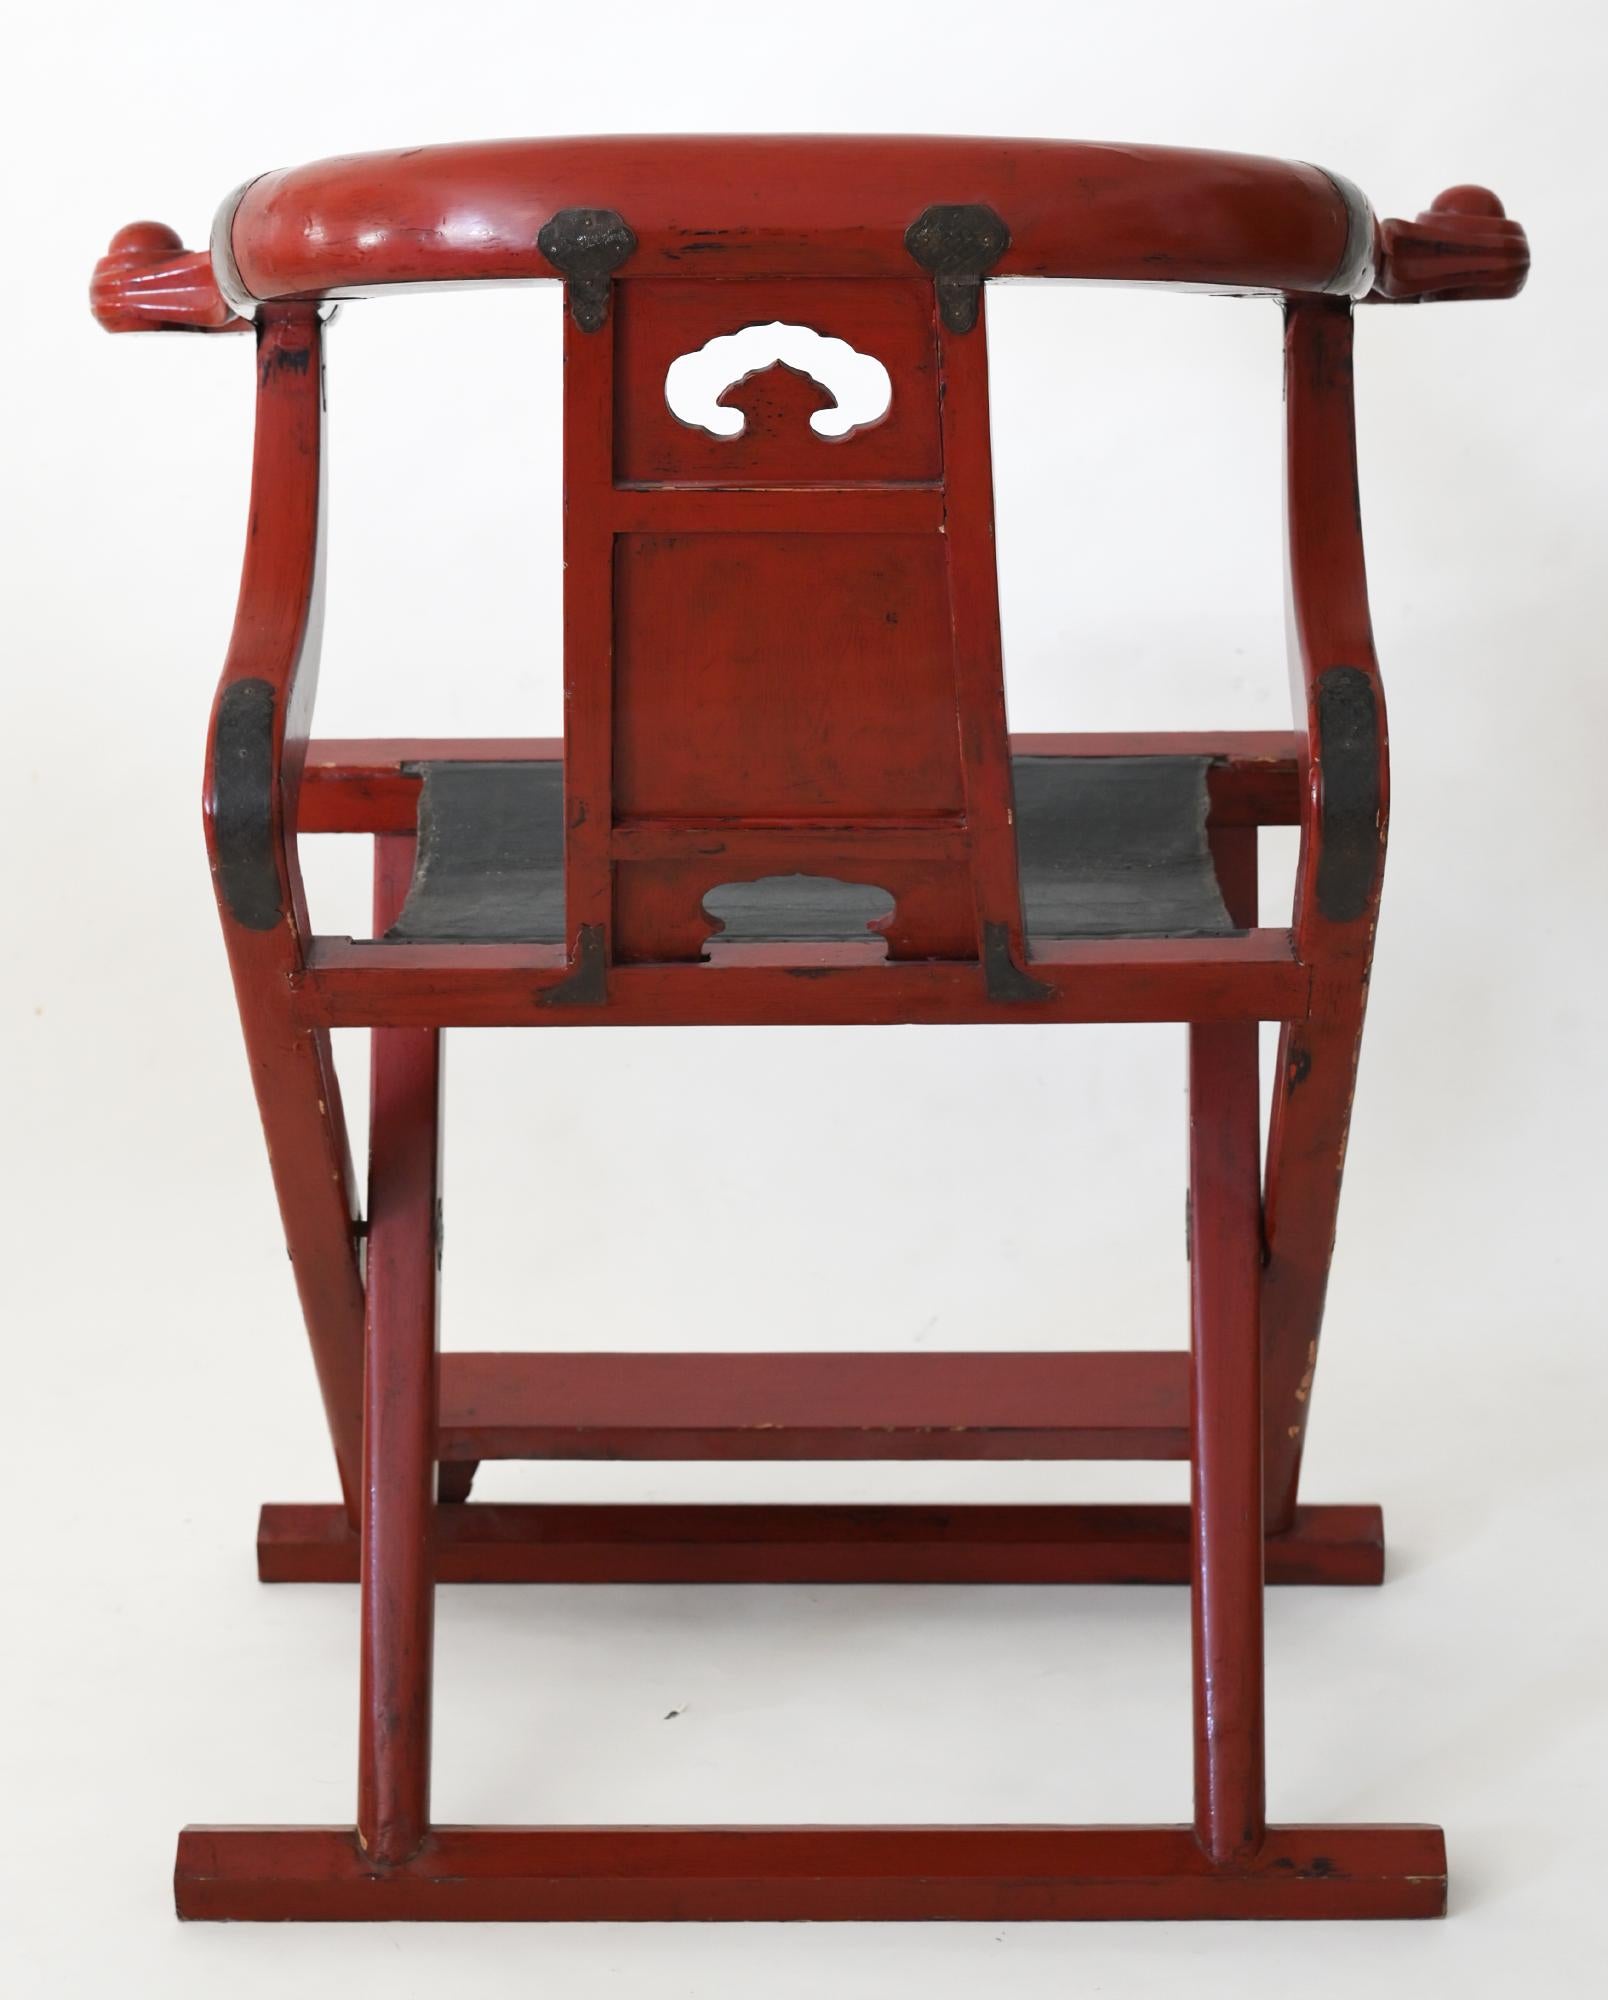 Der chinesische Klappstuhl entstand Anfang des 19. Jahrhunderts. Er ist sehr schön ausgearbeitet und der rote Lack ist in einem guten Zustand. Die Form des Stuhls ist sehr klassisch für die klassischen Chinesen.
   